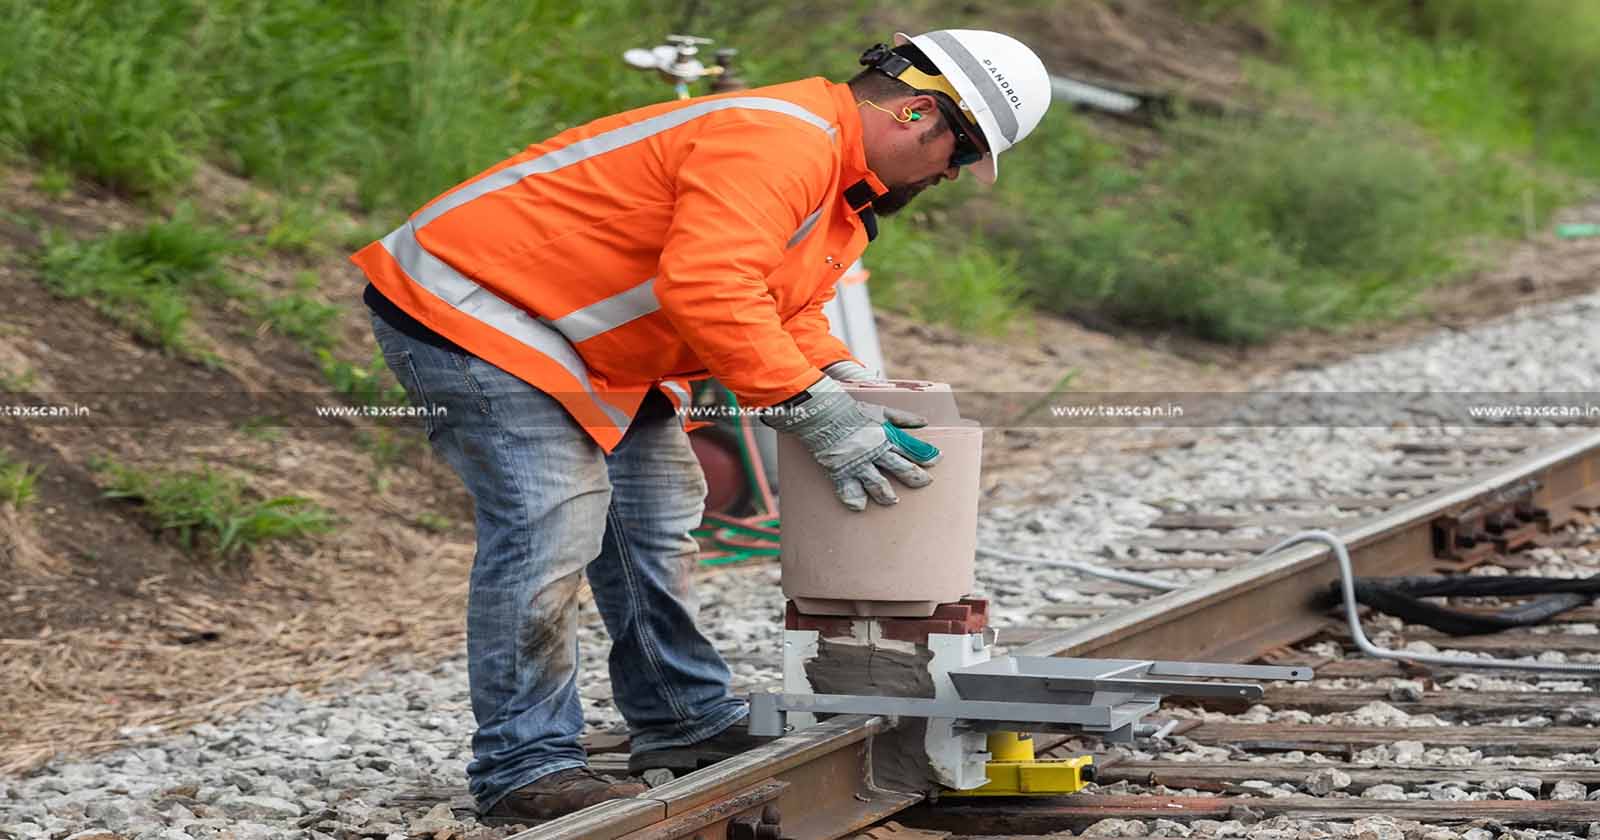 Welding - Railway Tracks - labour services - labour - Composite Supply - GST - AAR - Taxscan